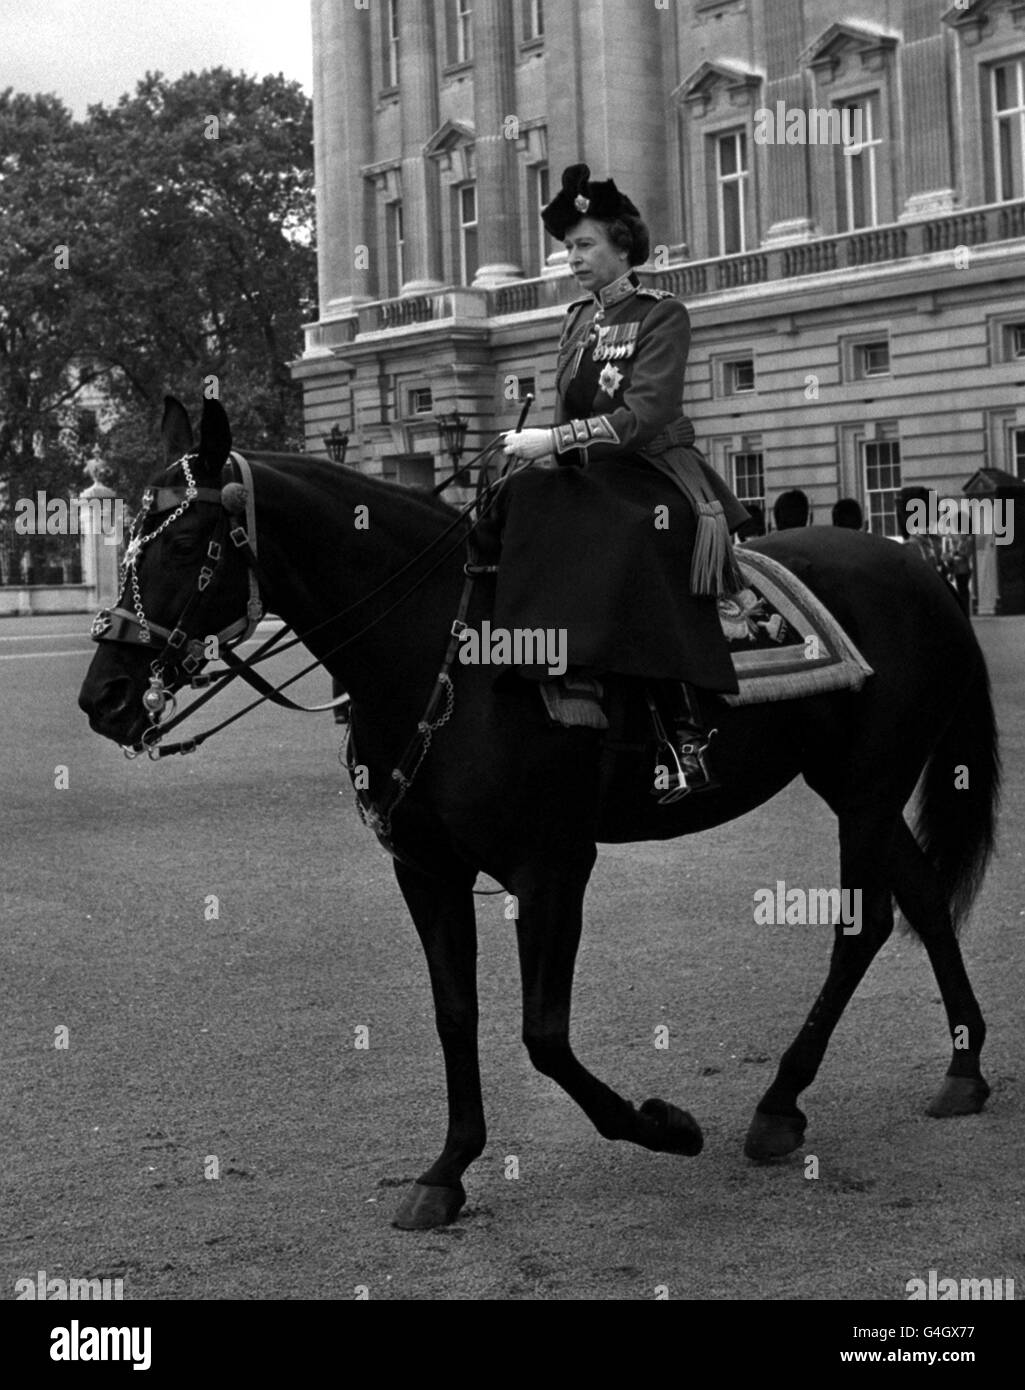 La Reine sur son cheval birman quitte le Palais de Buckingham pour la parade des gardes à cheval et la cérémonie de Trooping de la couleur en célébration de son anniversaire officiel. Banque D'Images